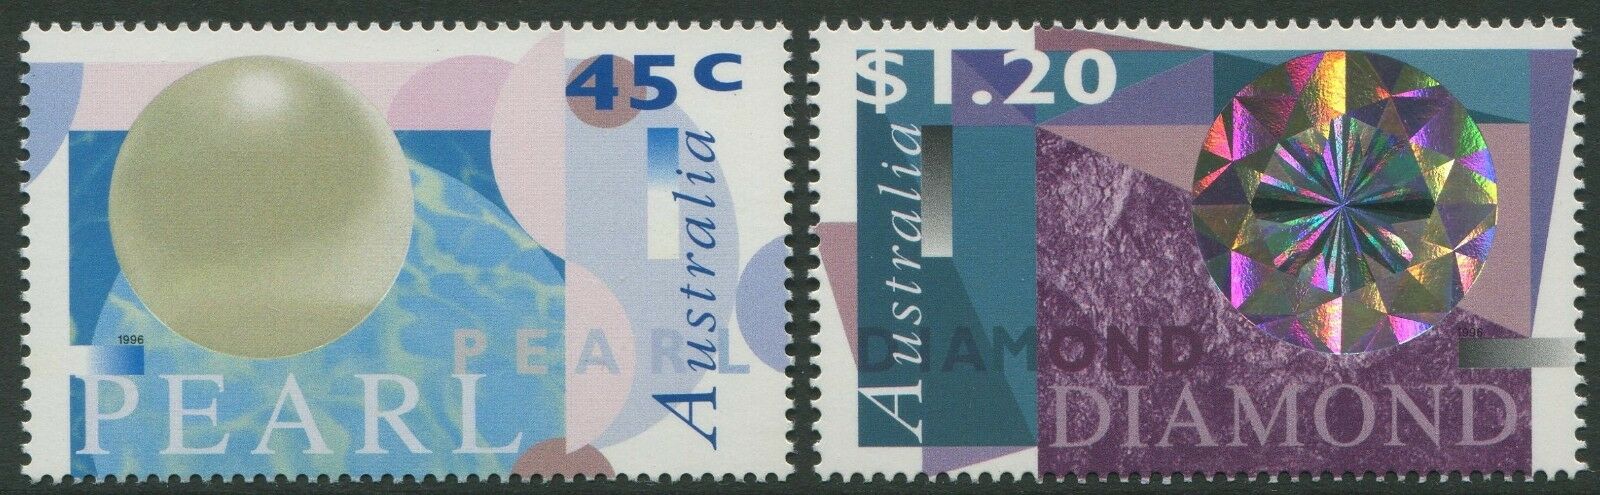 Australia 1996 - Diamante si perle, serie neuzata in folder